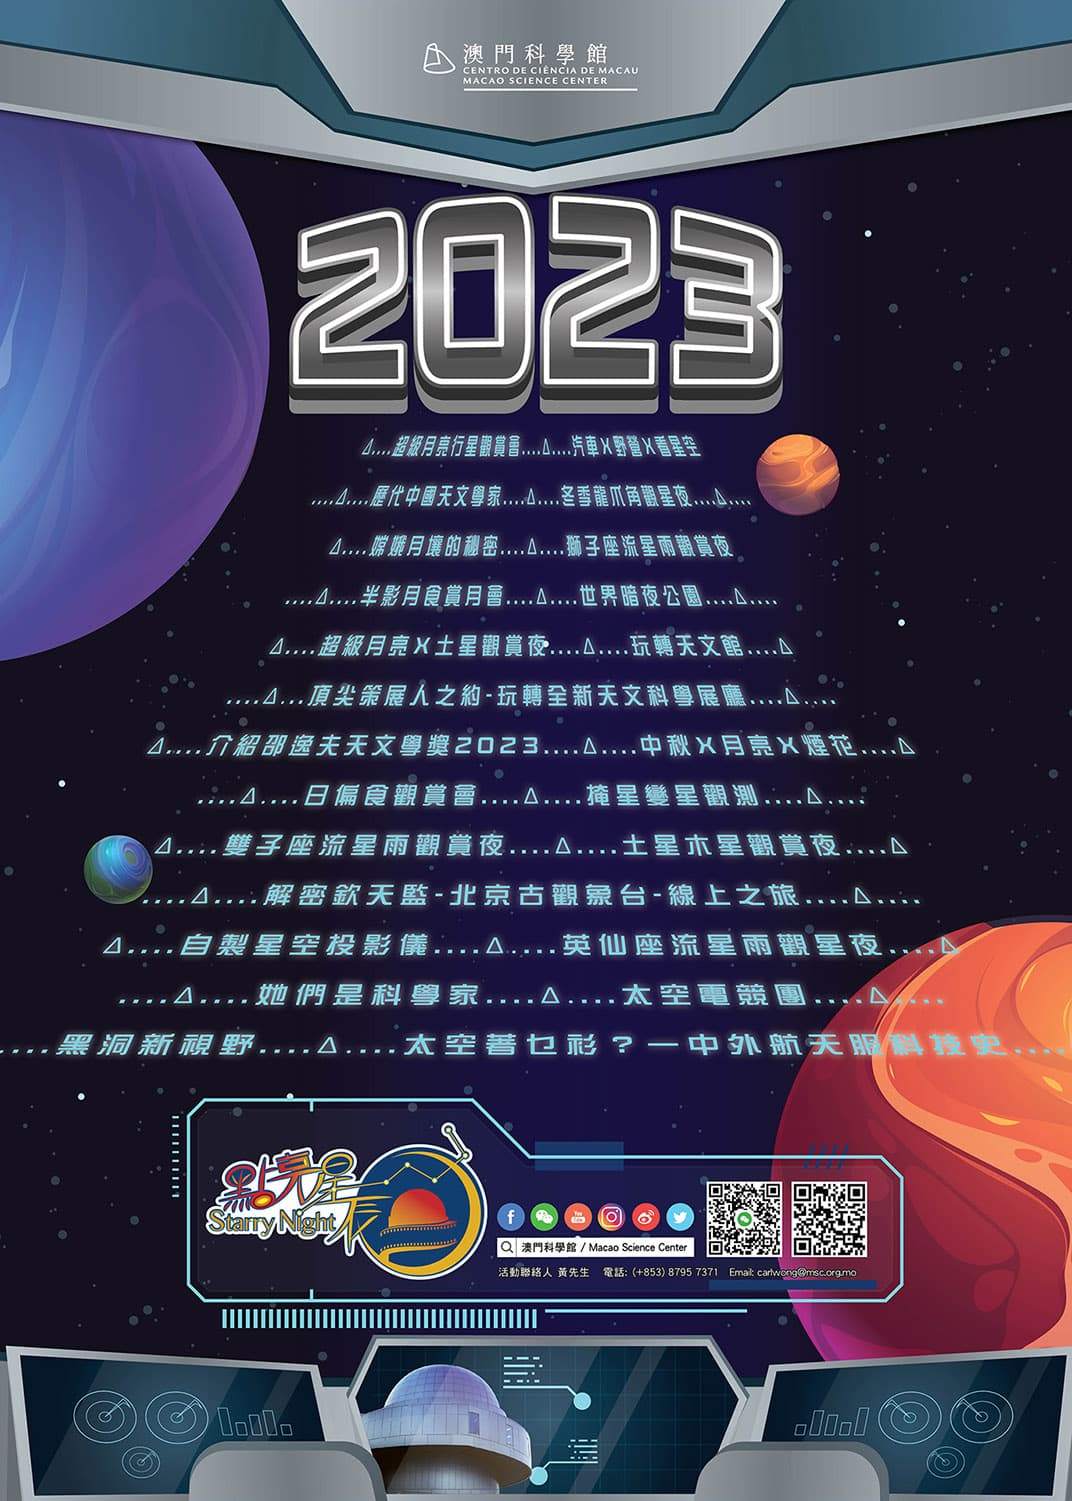 點亮星辰 - 2023年全年活動列表 (2023-00-00)